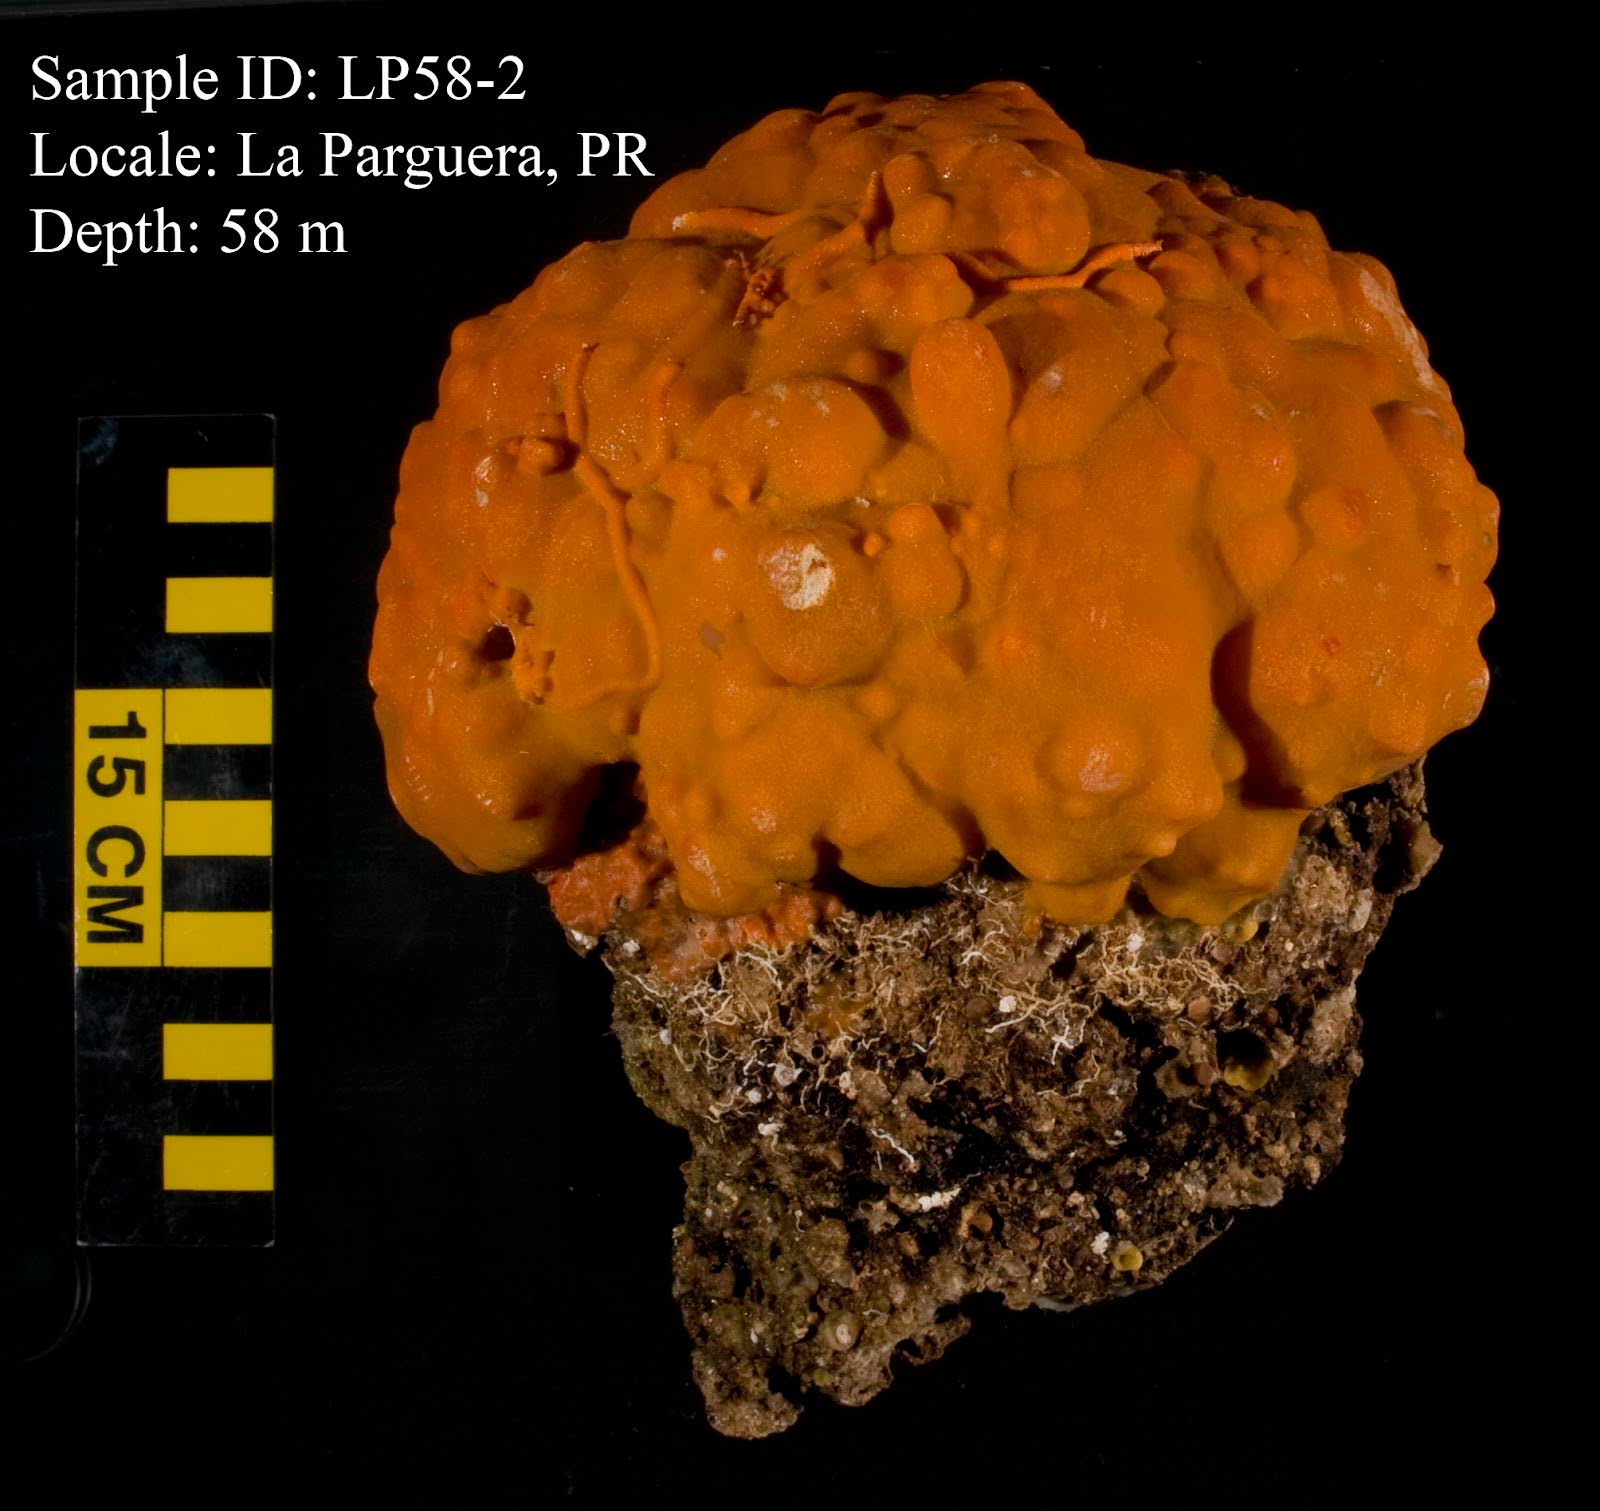 close-up image of orange sclerosponge sample with cm scale